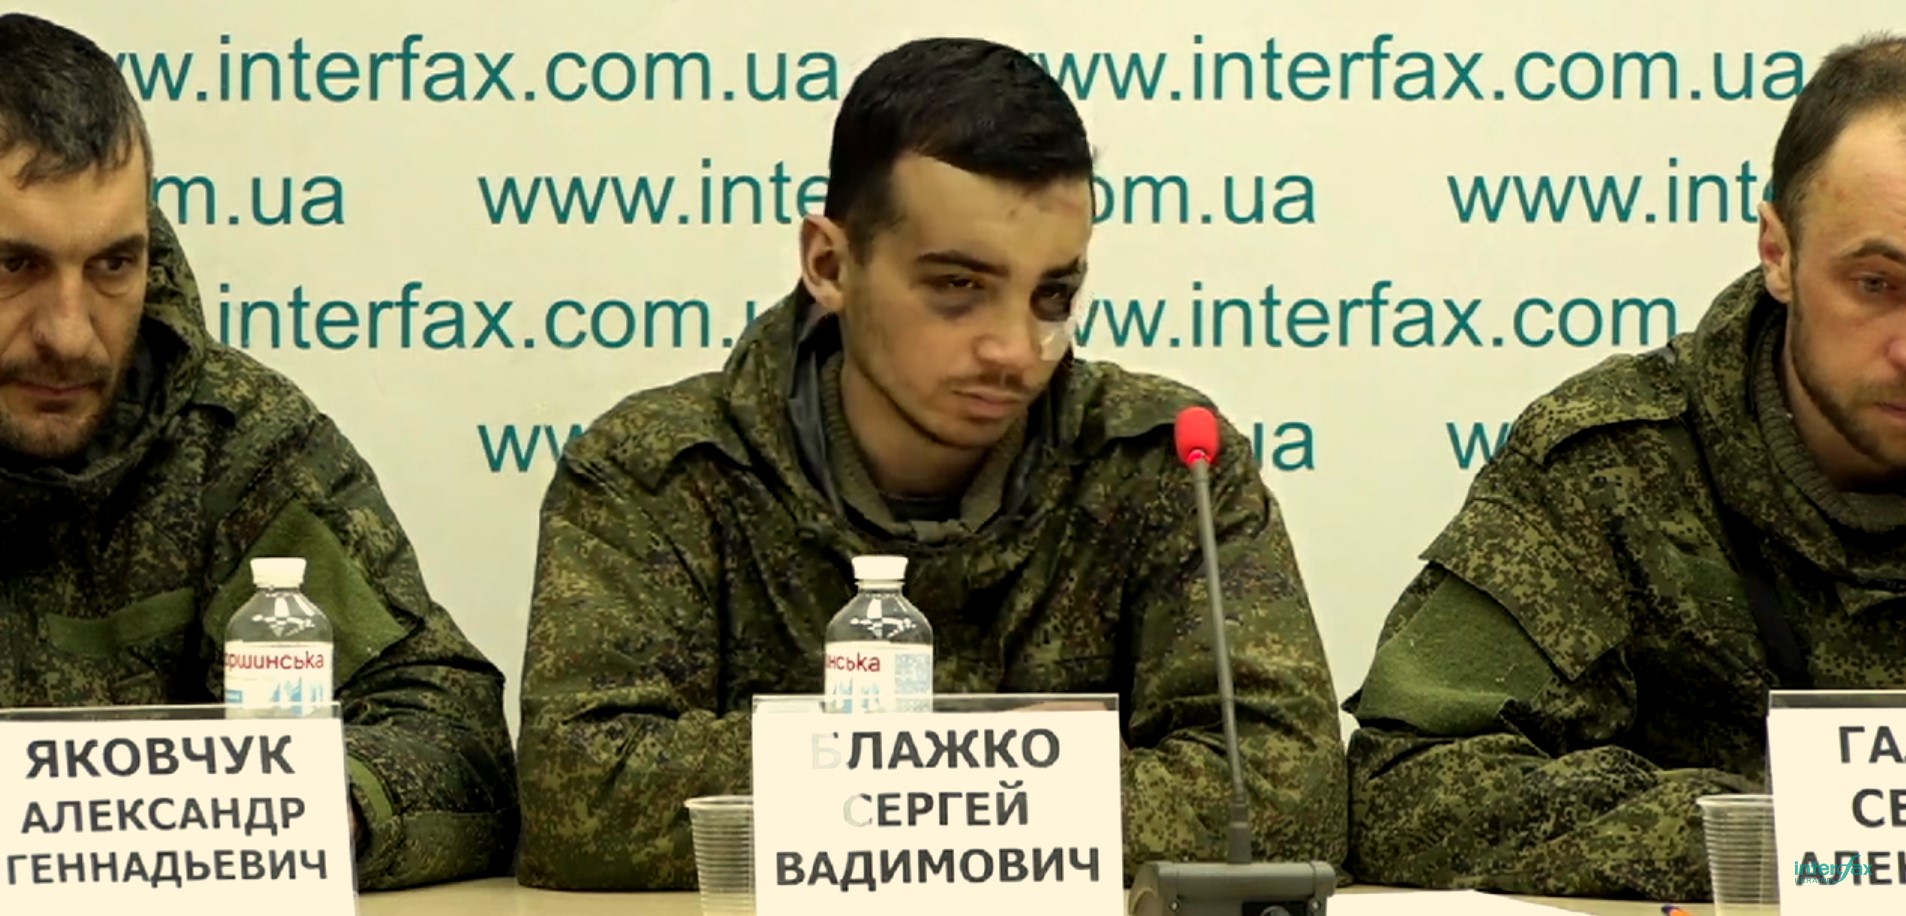 Пленные русские солдаты на украине телеграмм фото 55